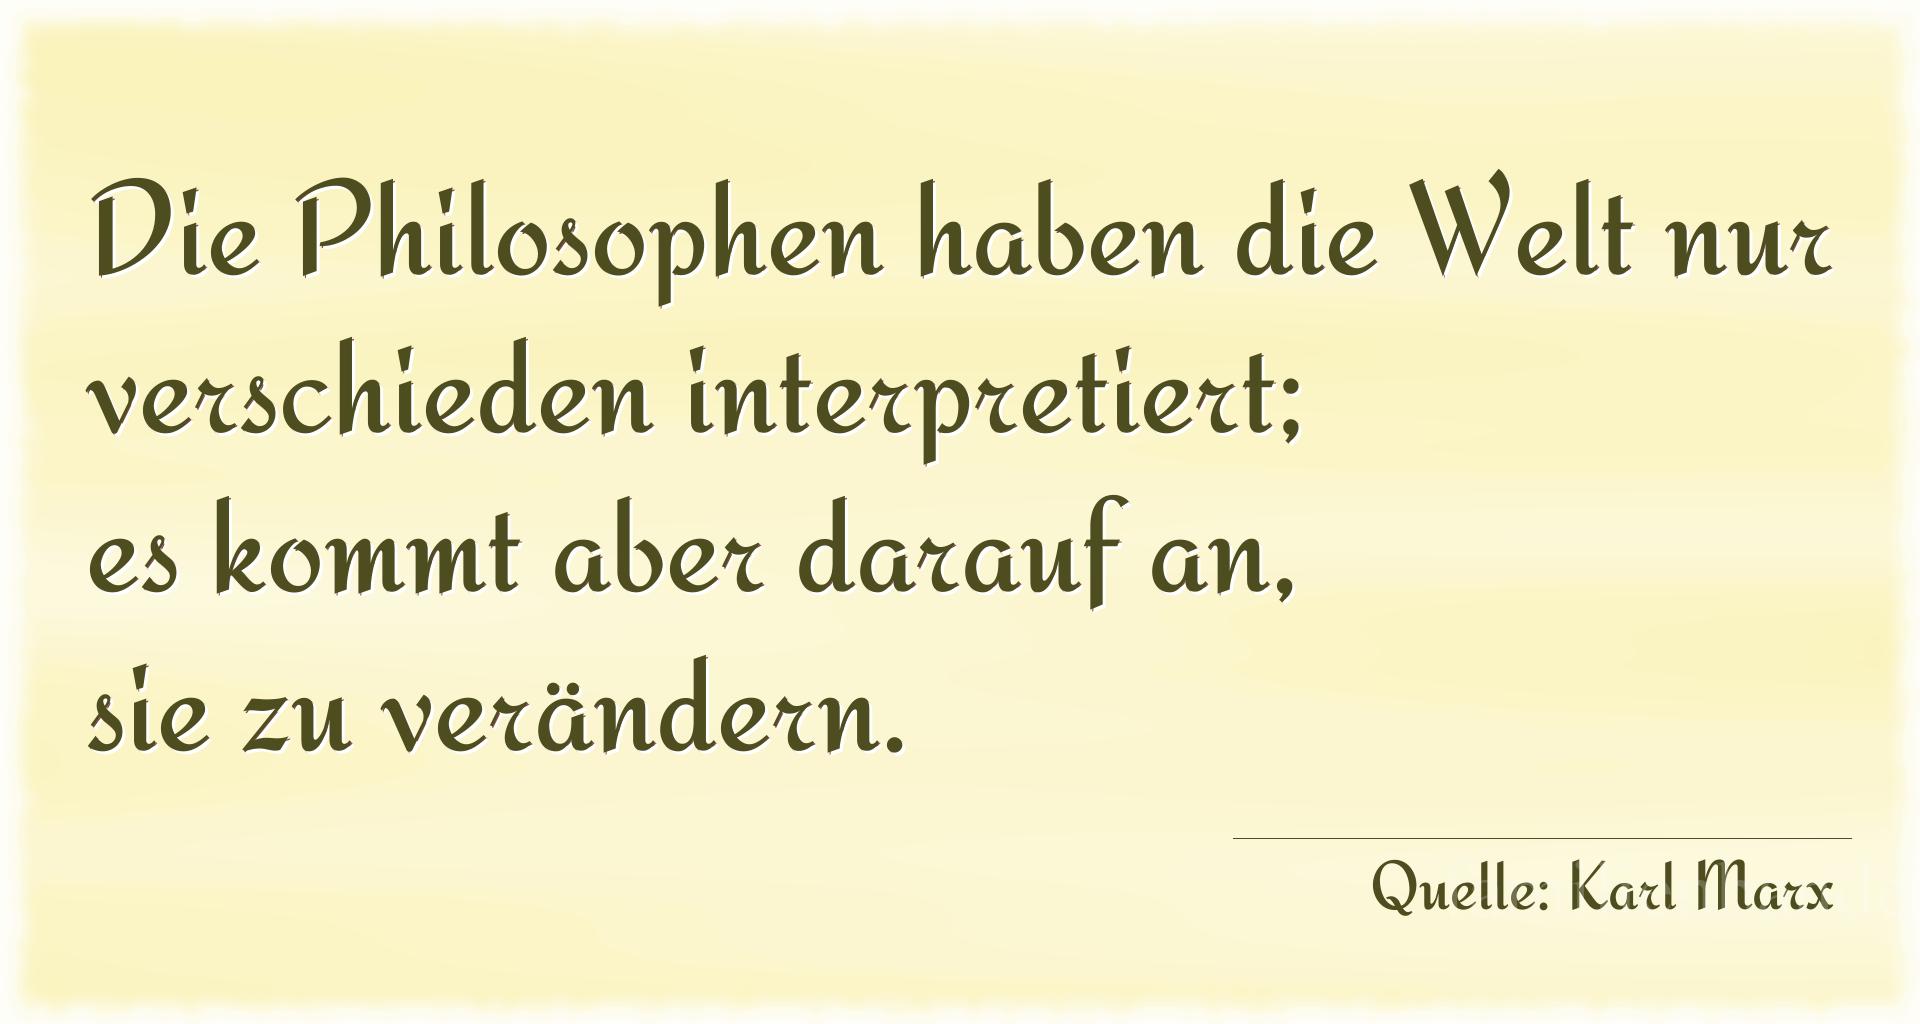 Aphorismus Nr. 1269 (von Karl Marx): "Die Philosophen haben die Welt nur verschieden interpreti [...]